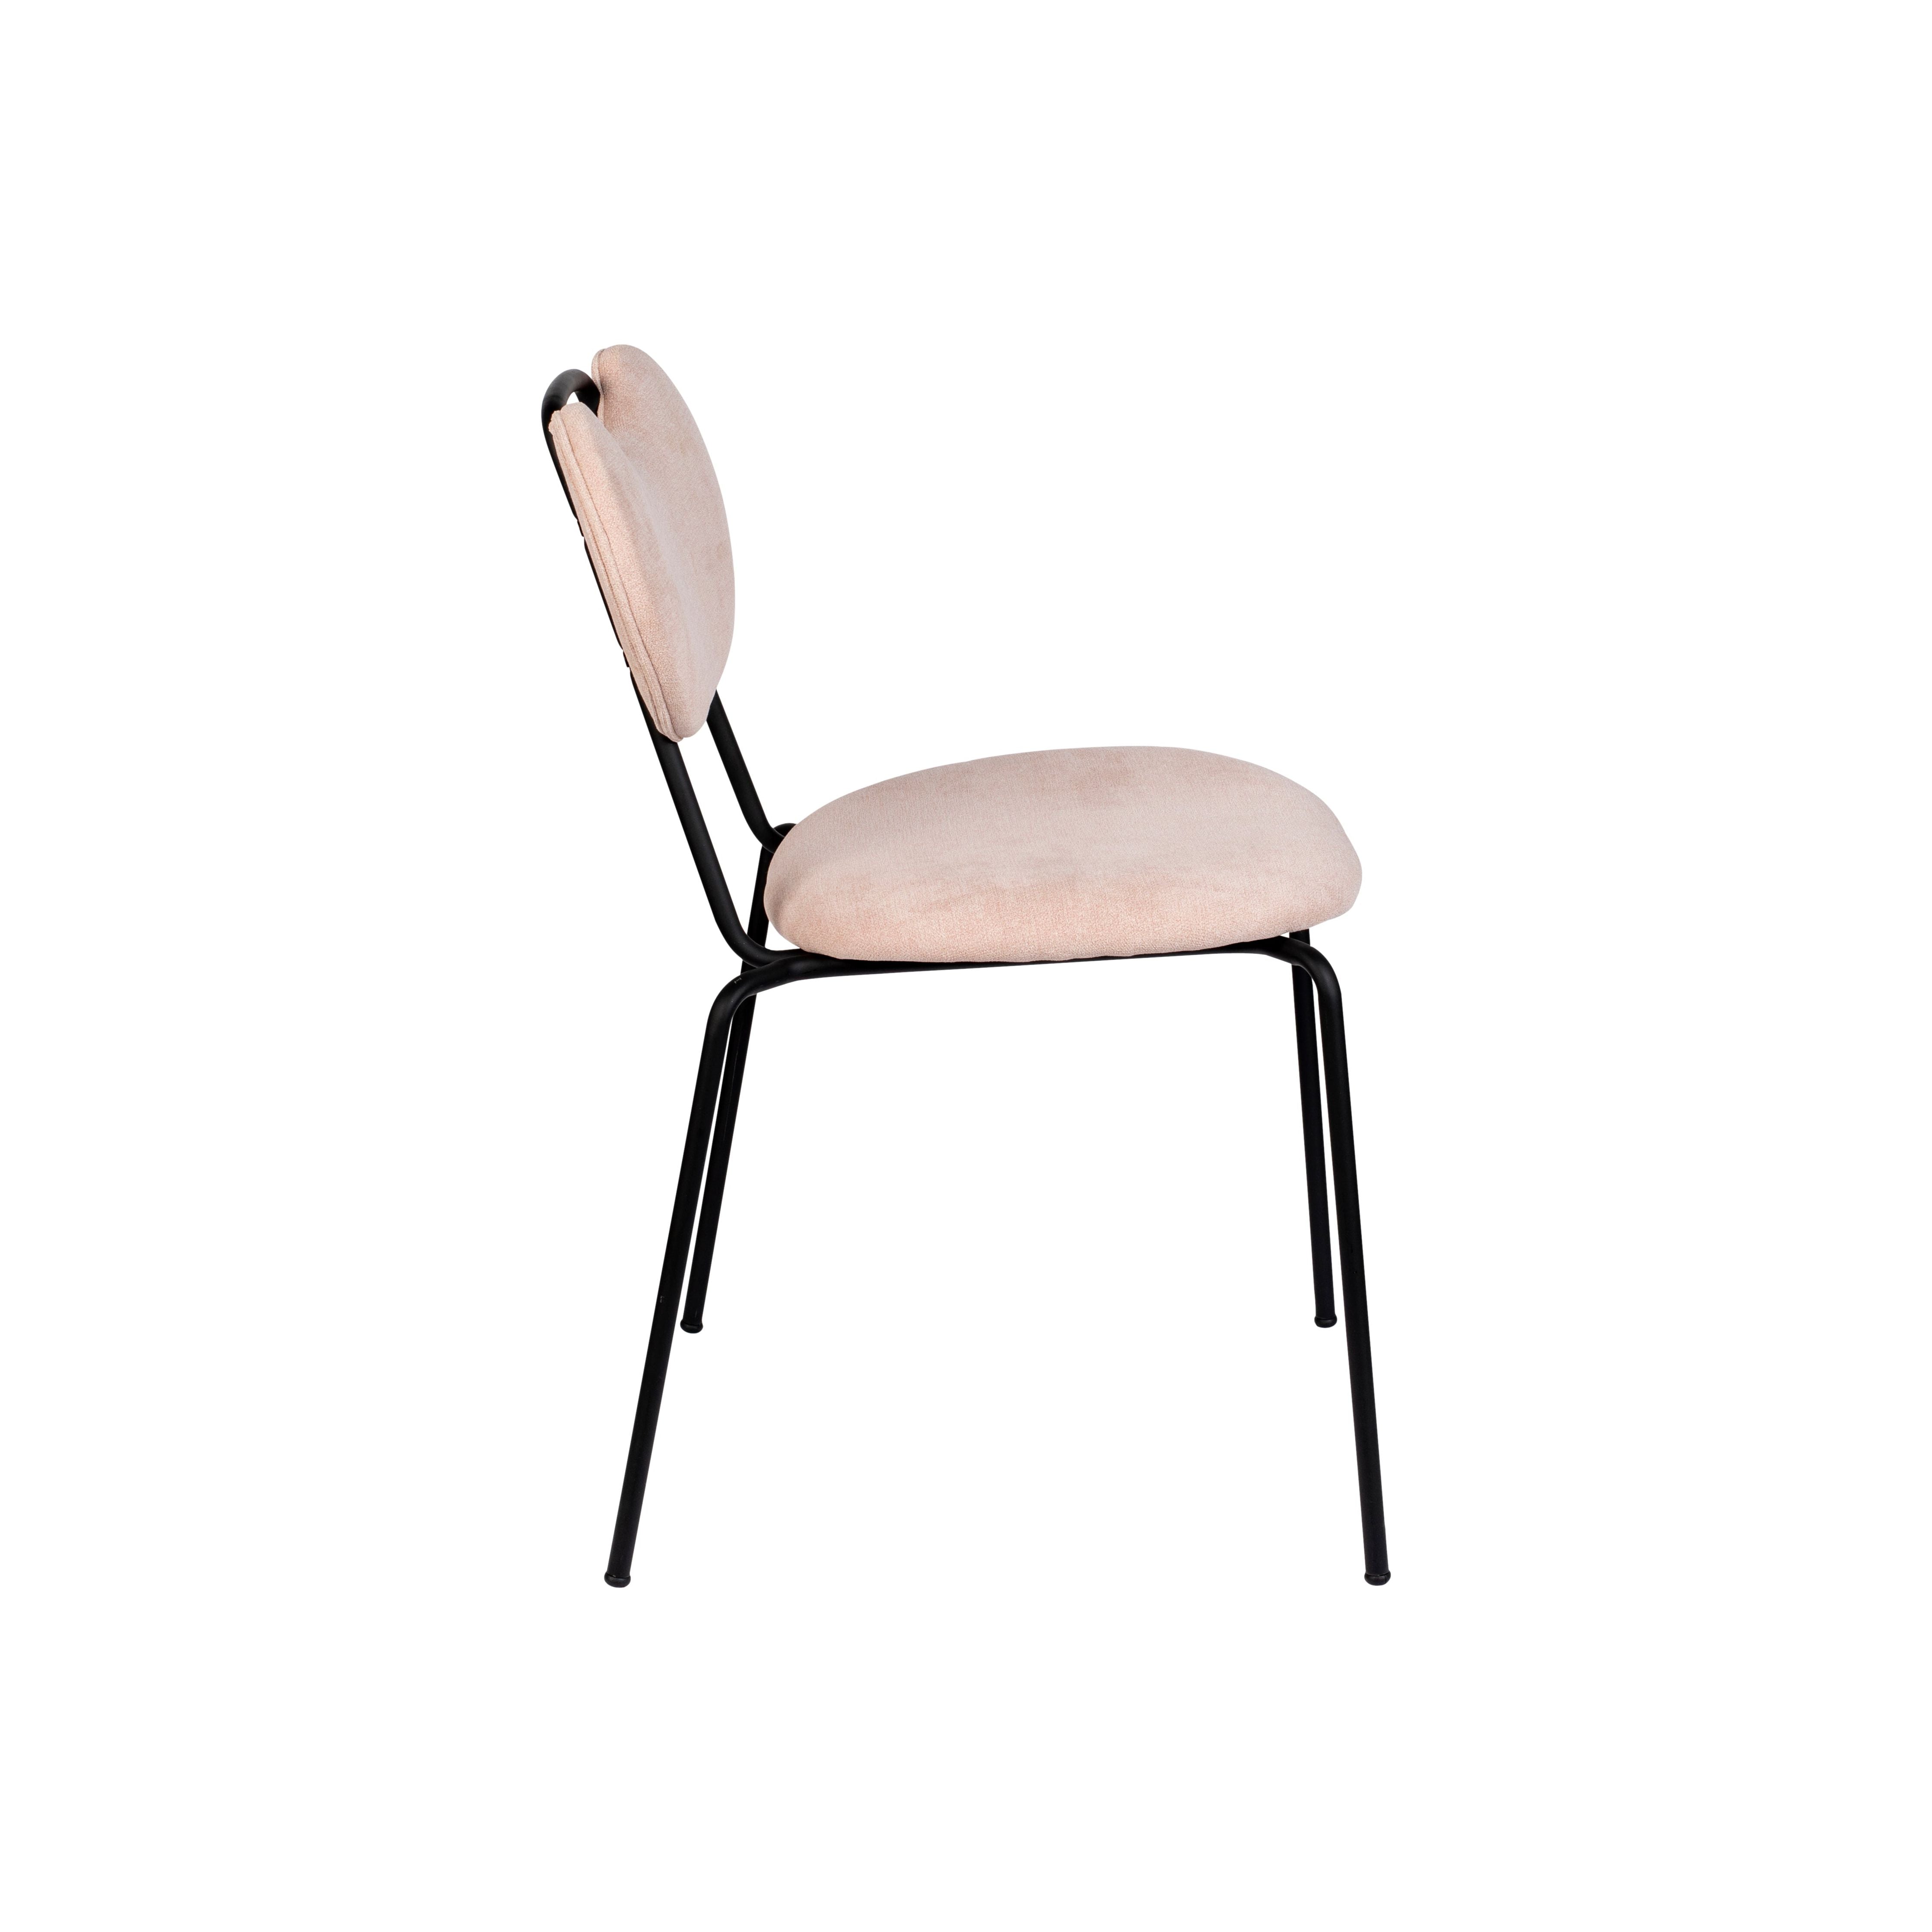 Chair aspen light pink